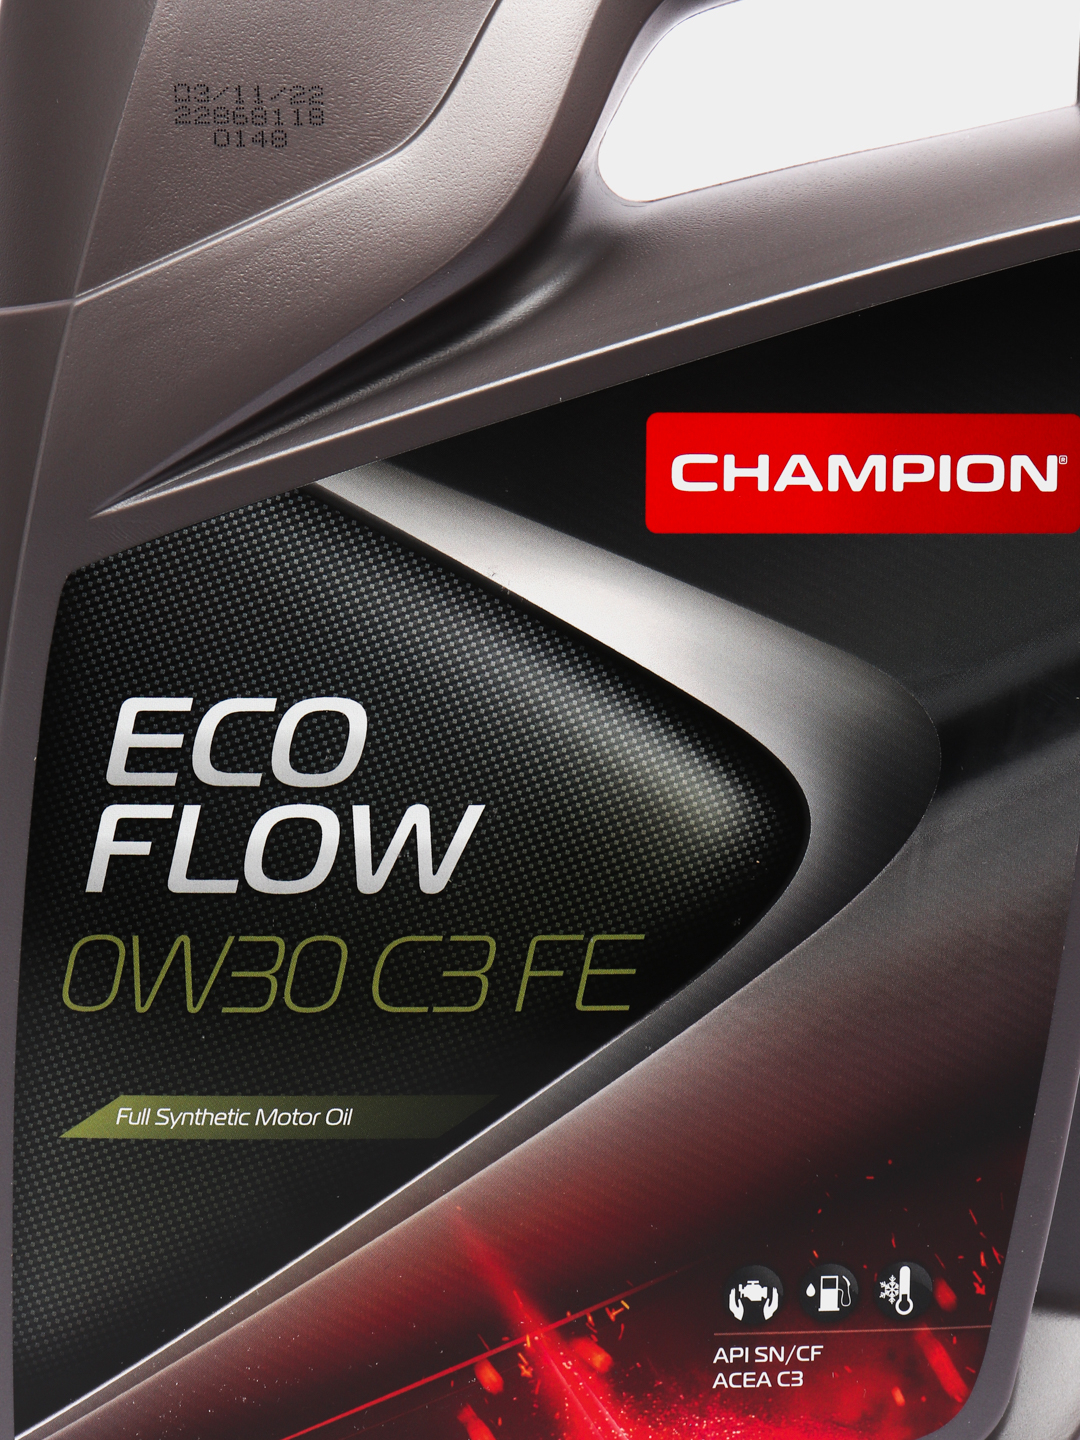 Eco flow